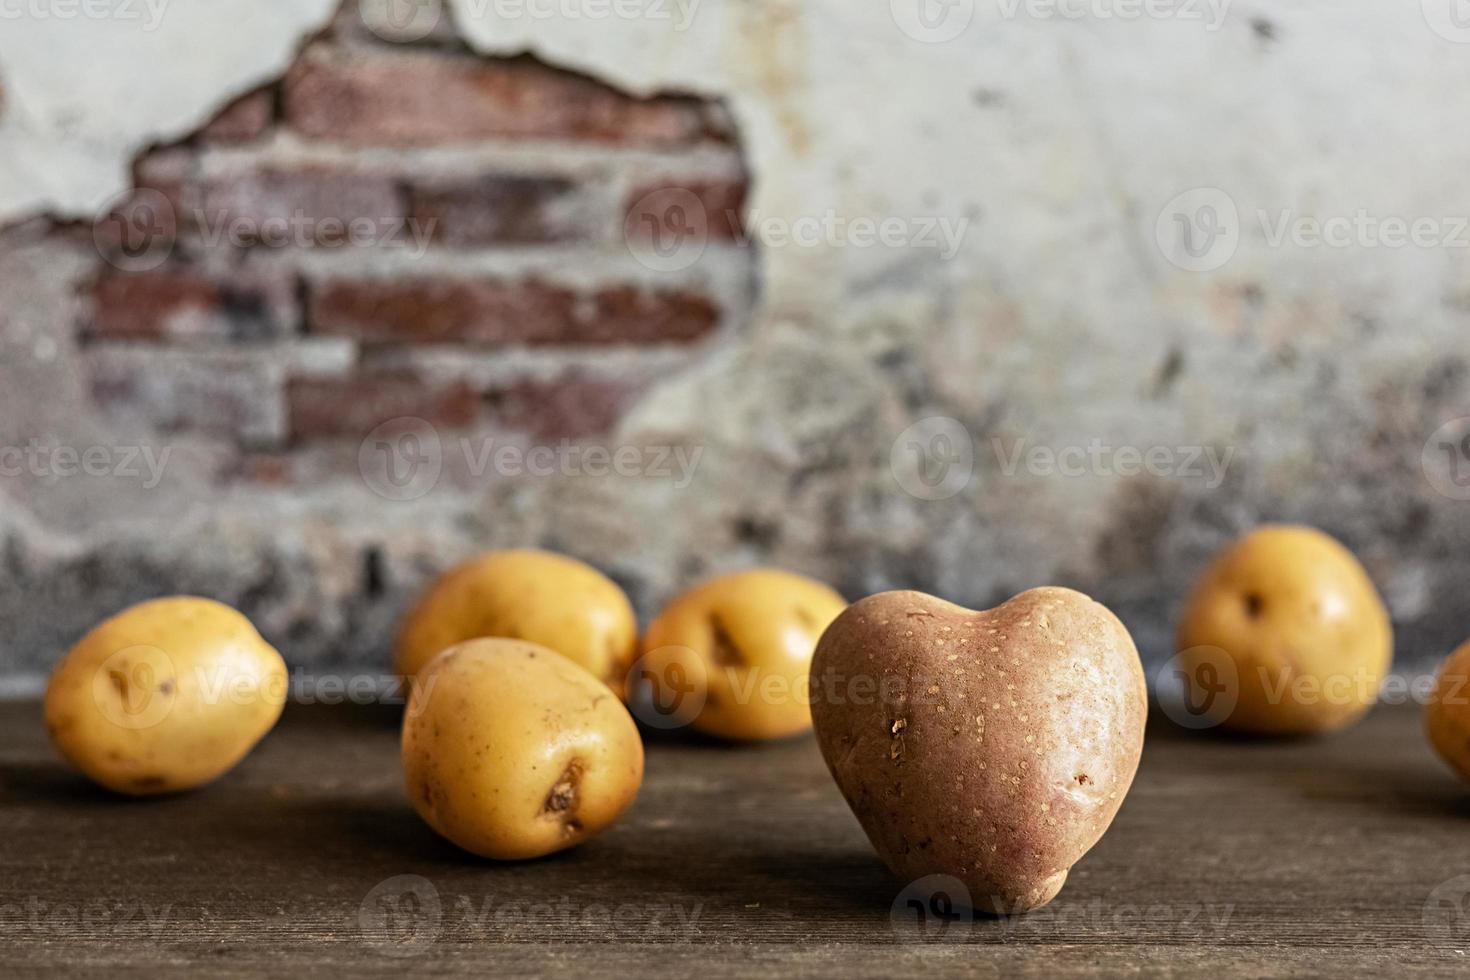 hartvormige rode aardappel onder witte aardappelen op vintage achtergrond foto